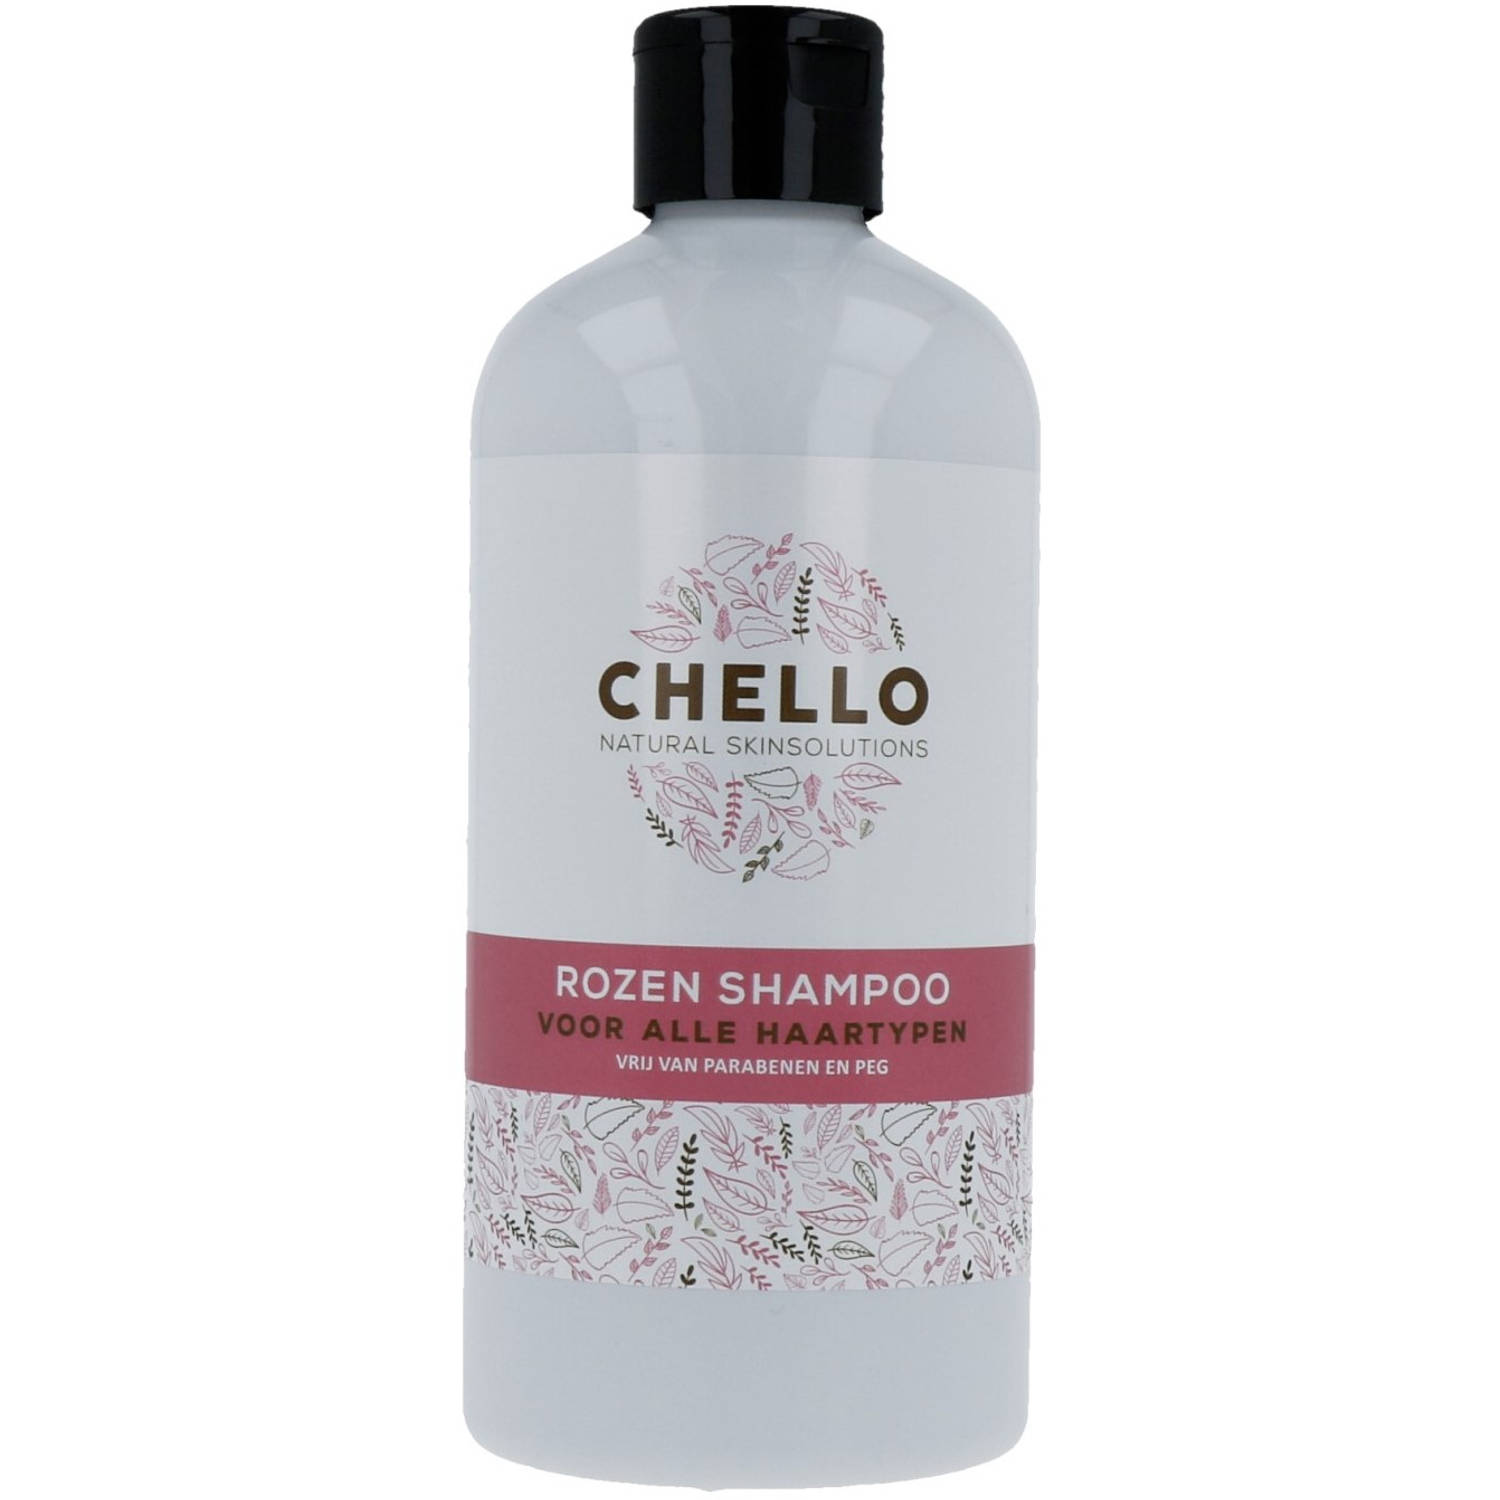 Chello Shampoo Rozen 500ml